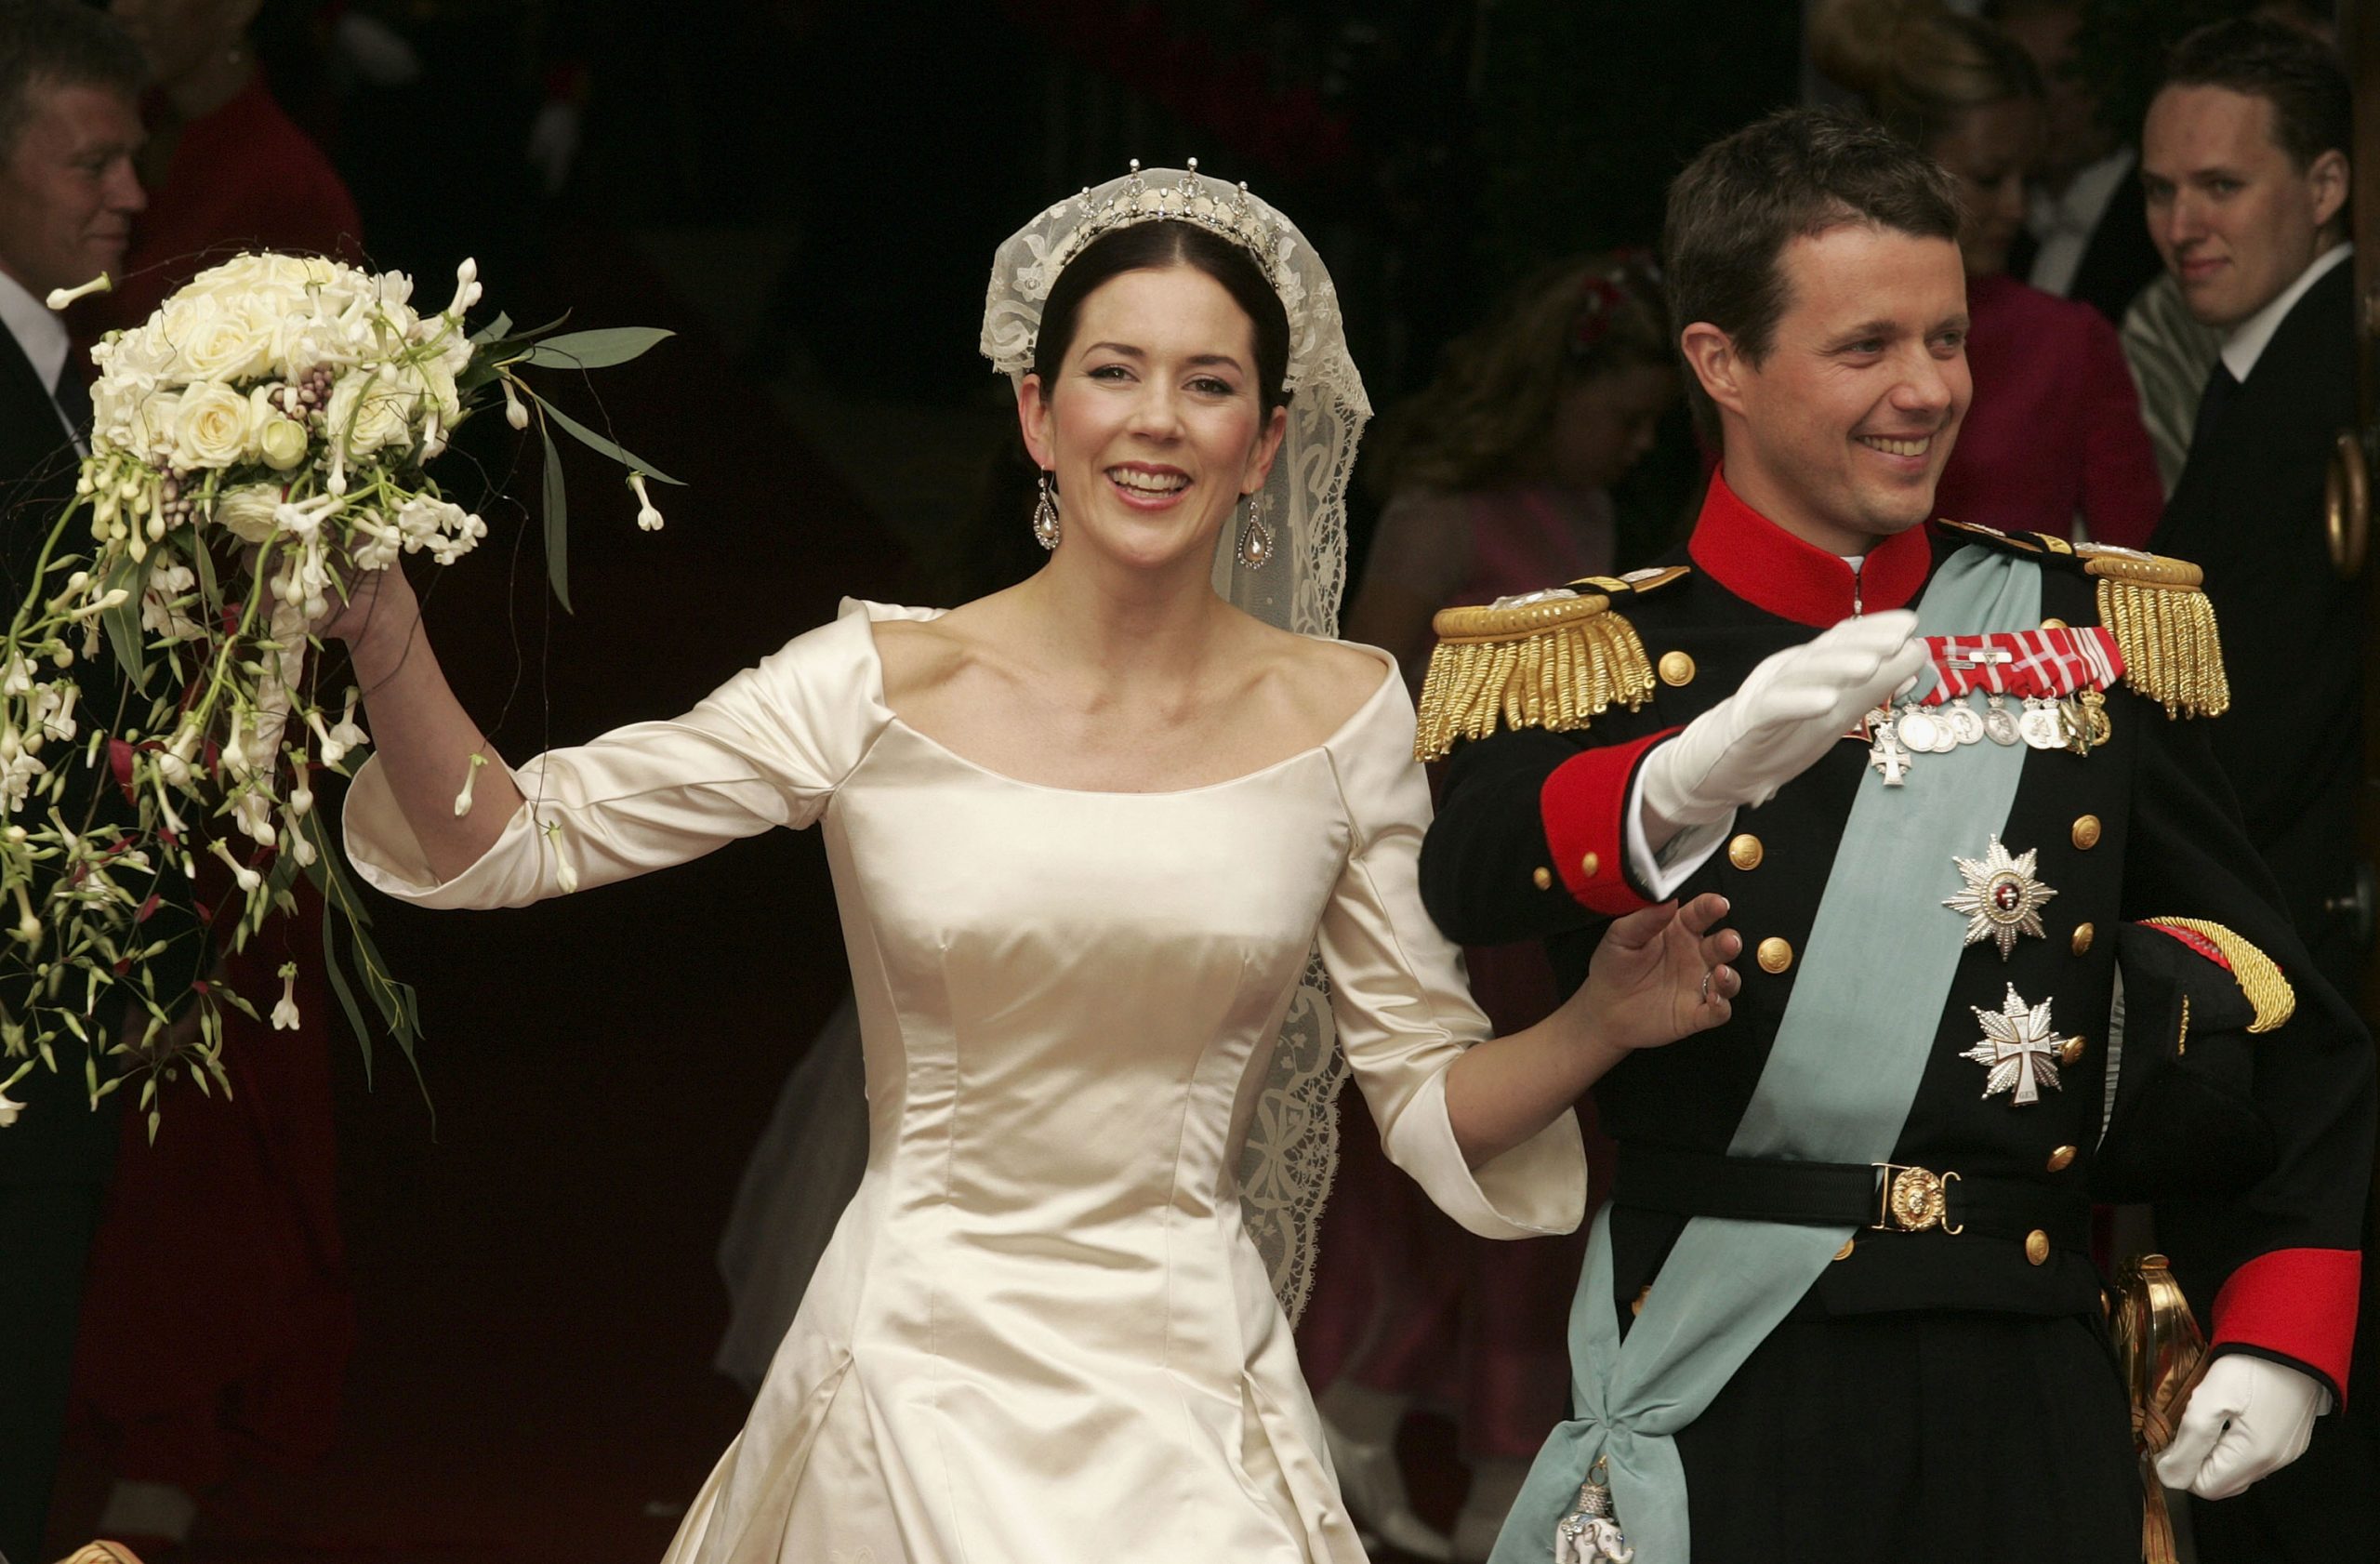 Mária dán királyi hercegné és Frigyes dán királyi herceg